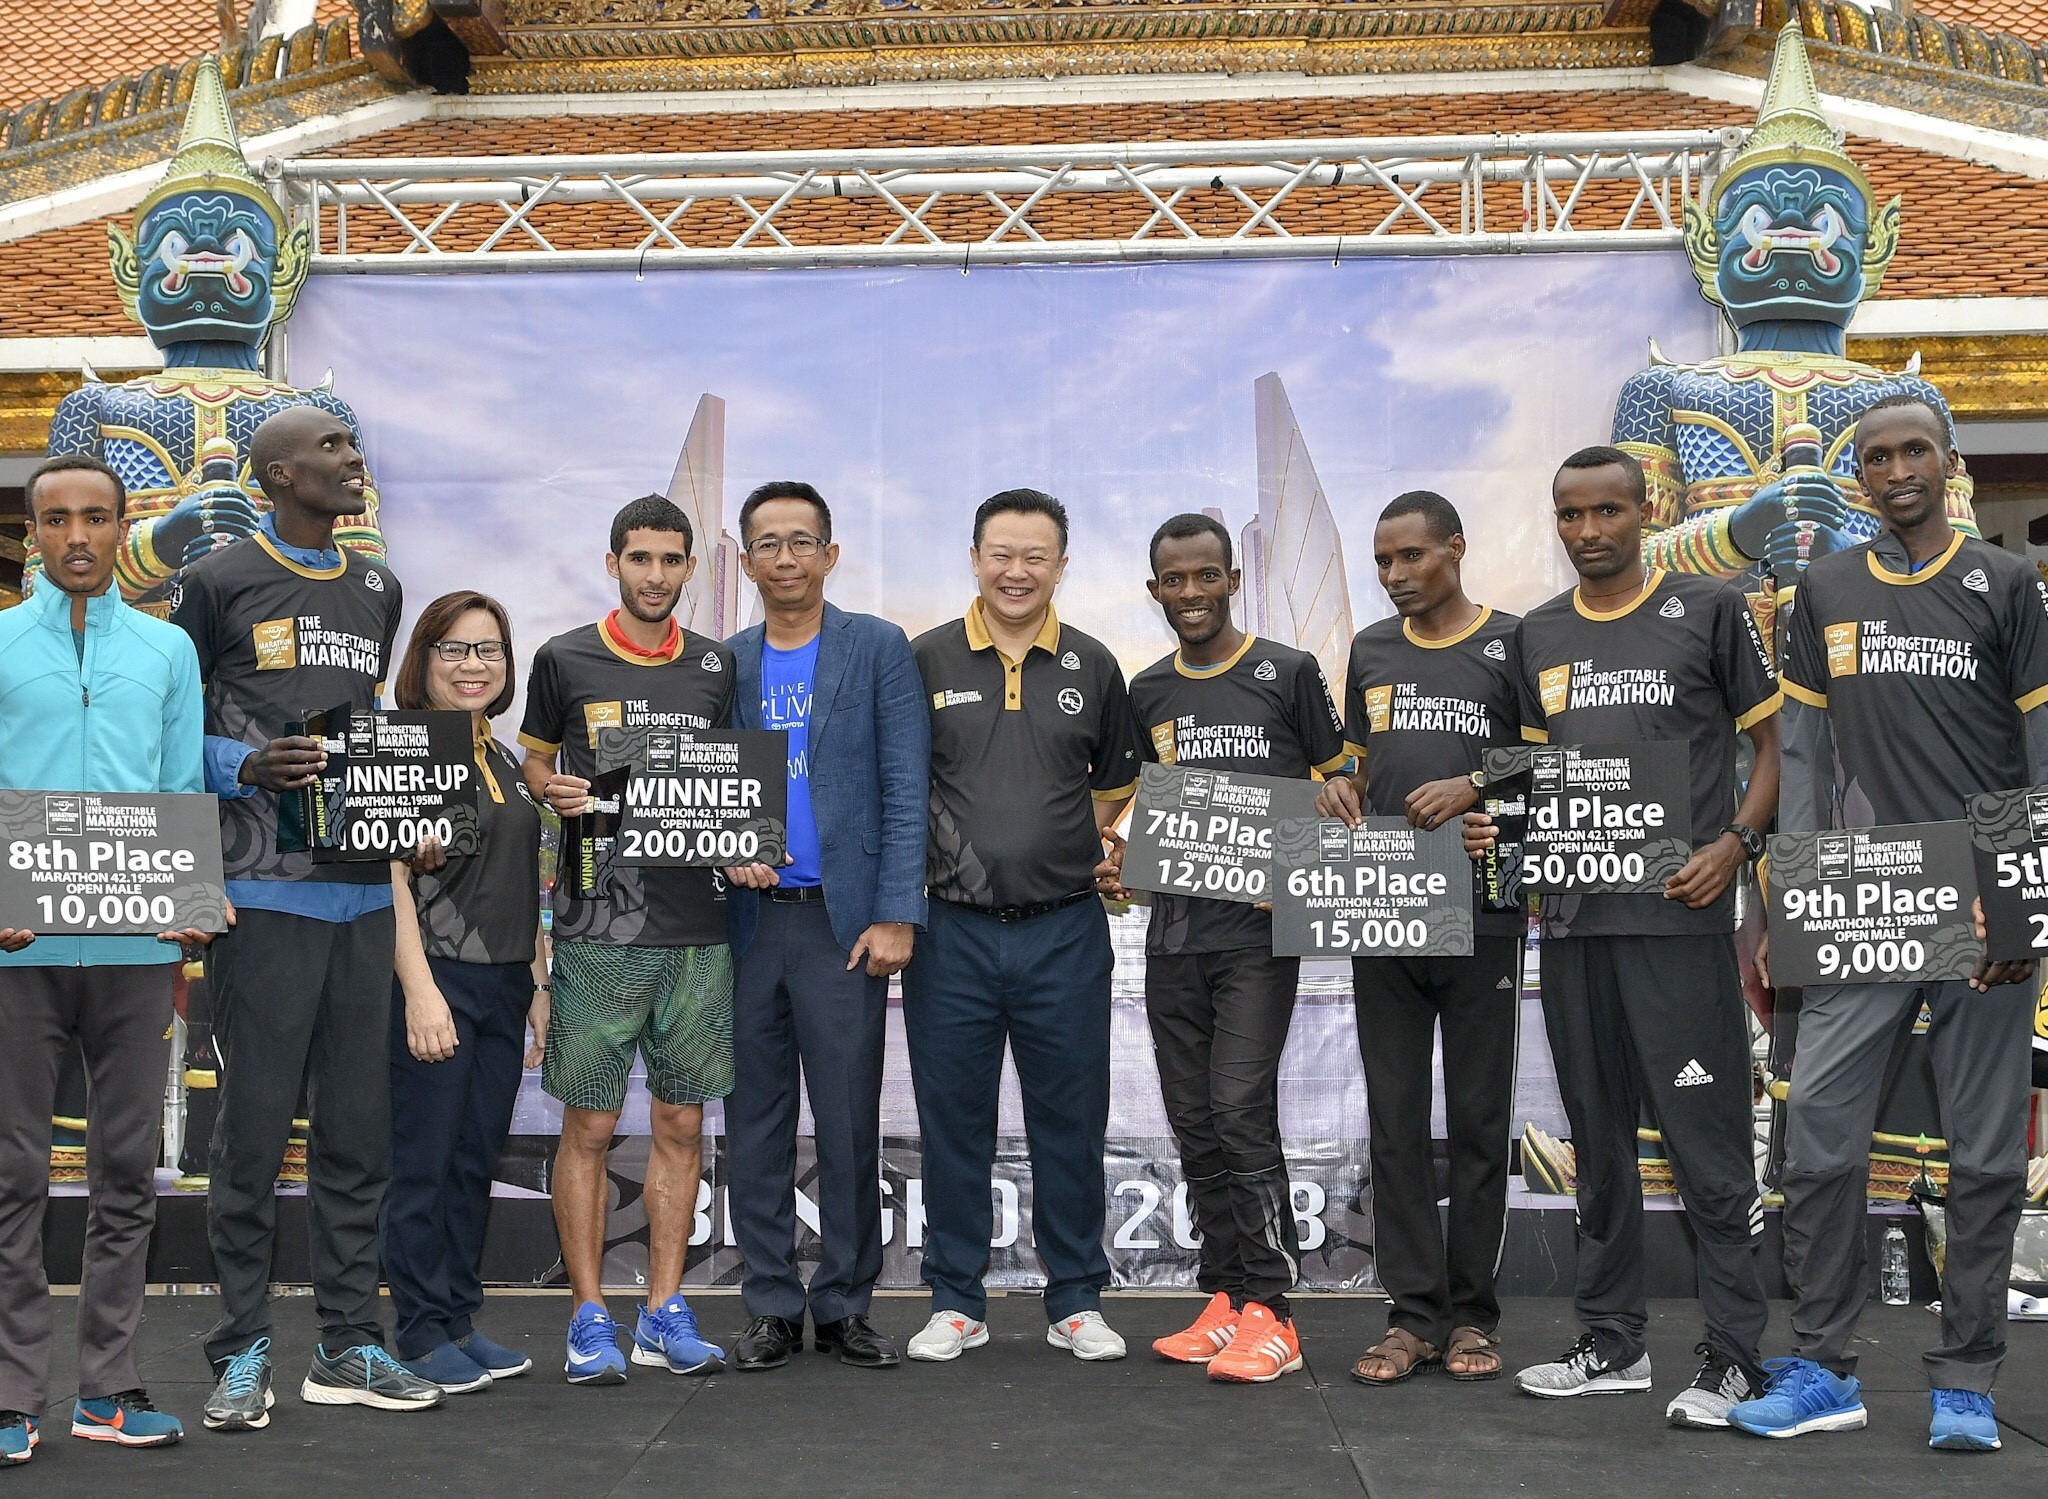 จอมอึด“โมร็อกโก-เอธิโอเปีย” ผงาดแชมป์  “อะเมซิ่ง ไทยแลนด์ มาราธอน แบงค็อก”  “สัญชัย-ลินดา” ทำเวลาดีสุดของนักวิ่งไทย